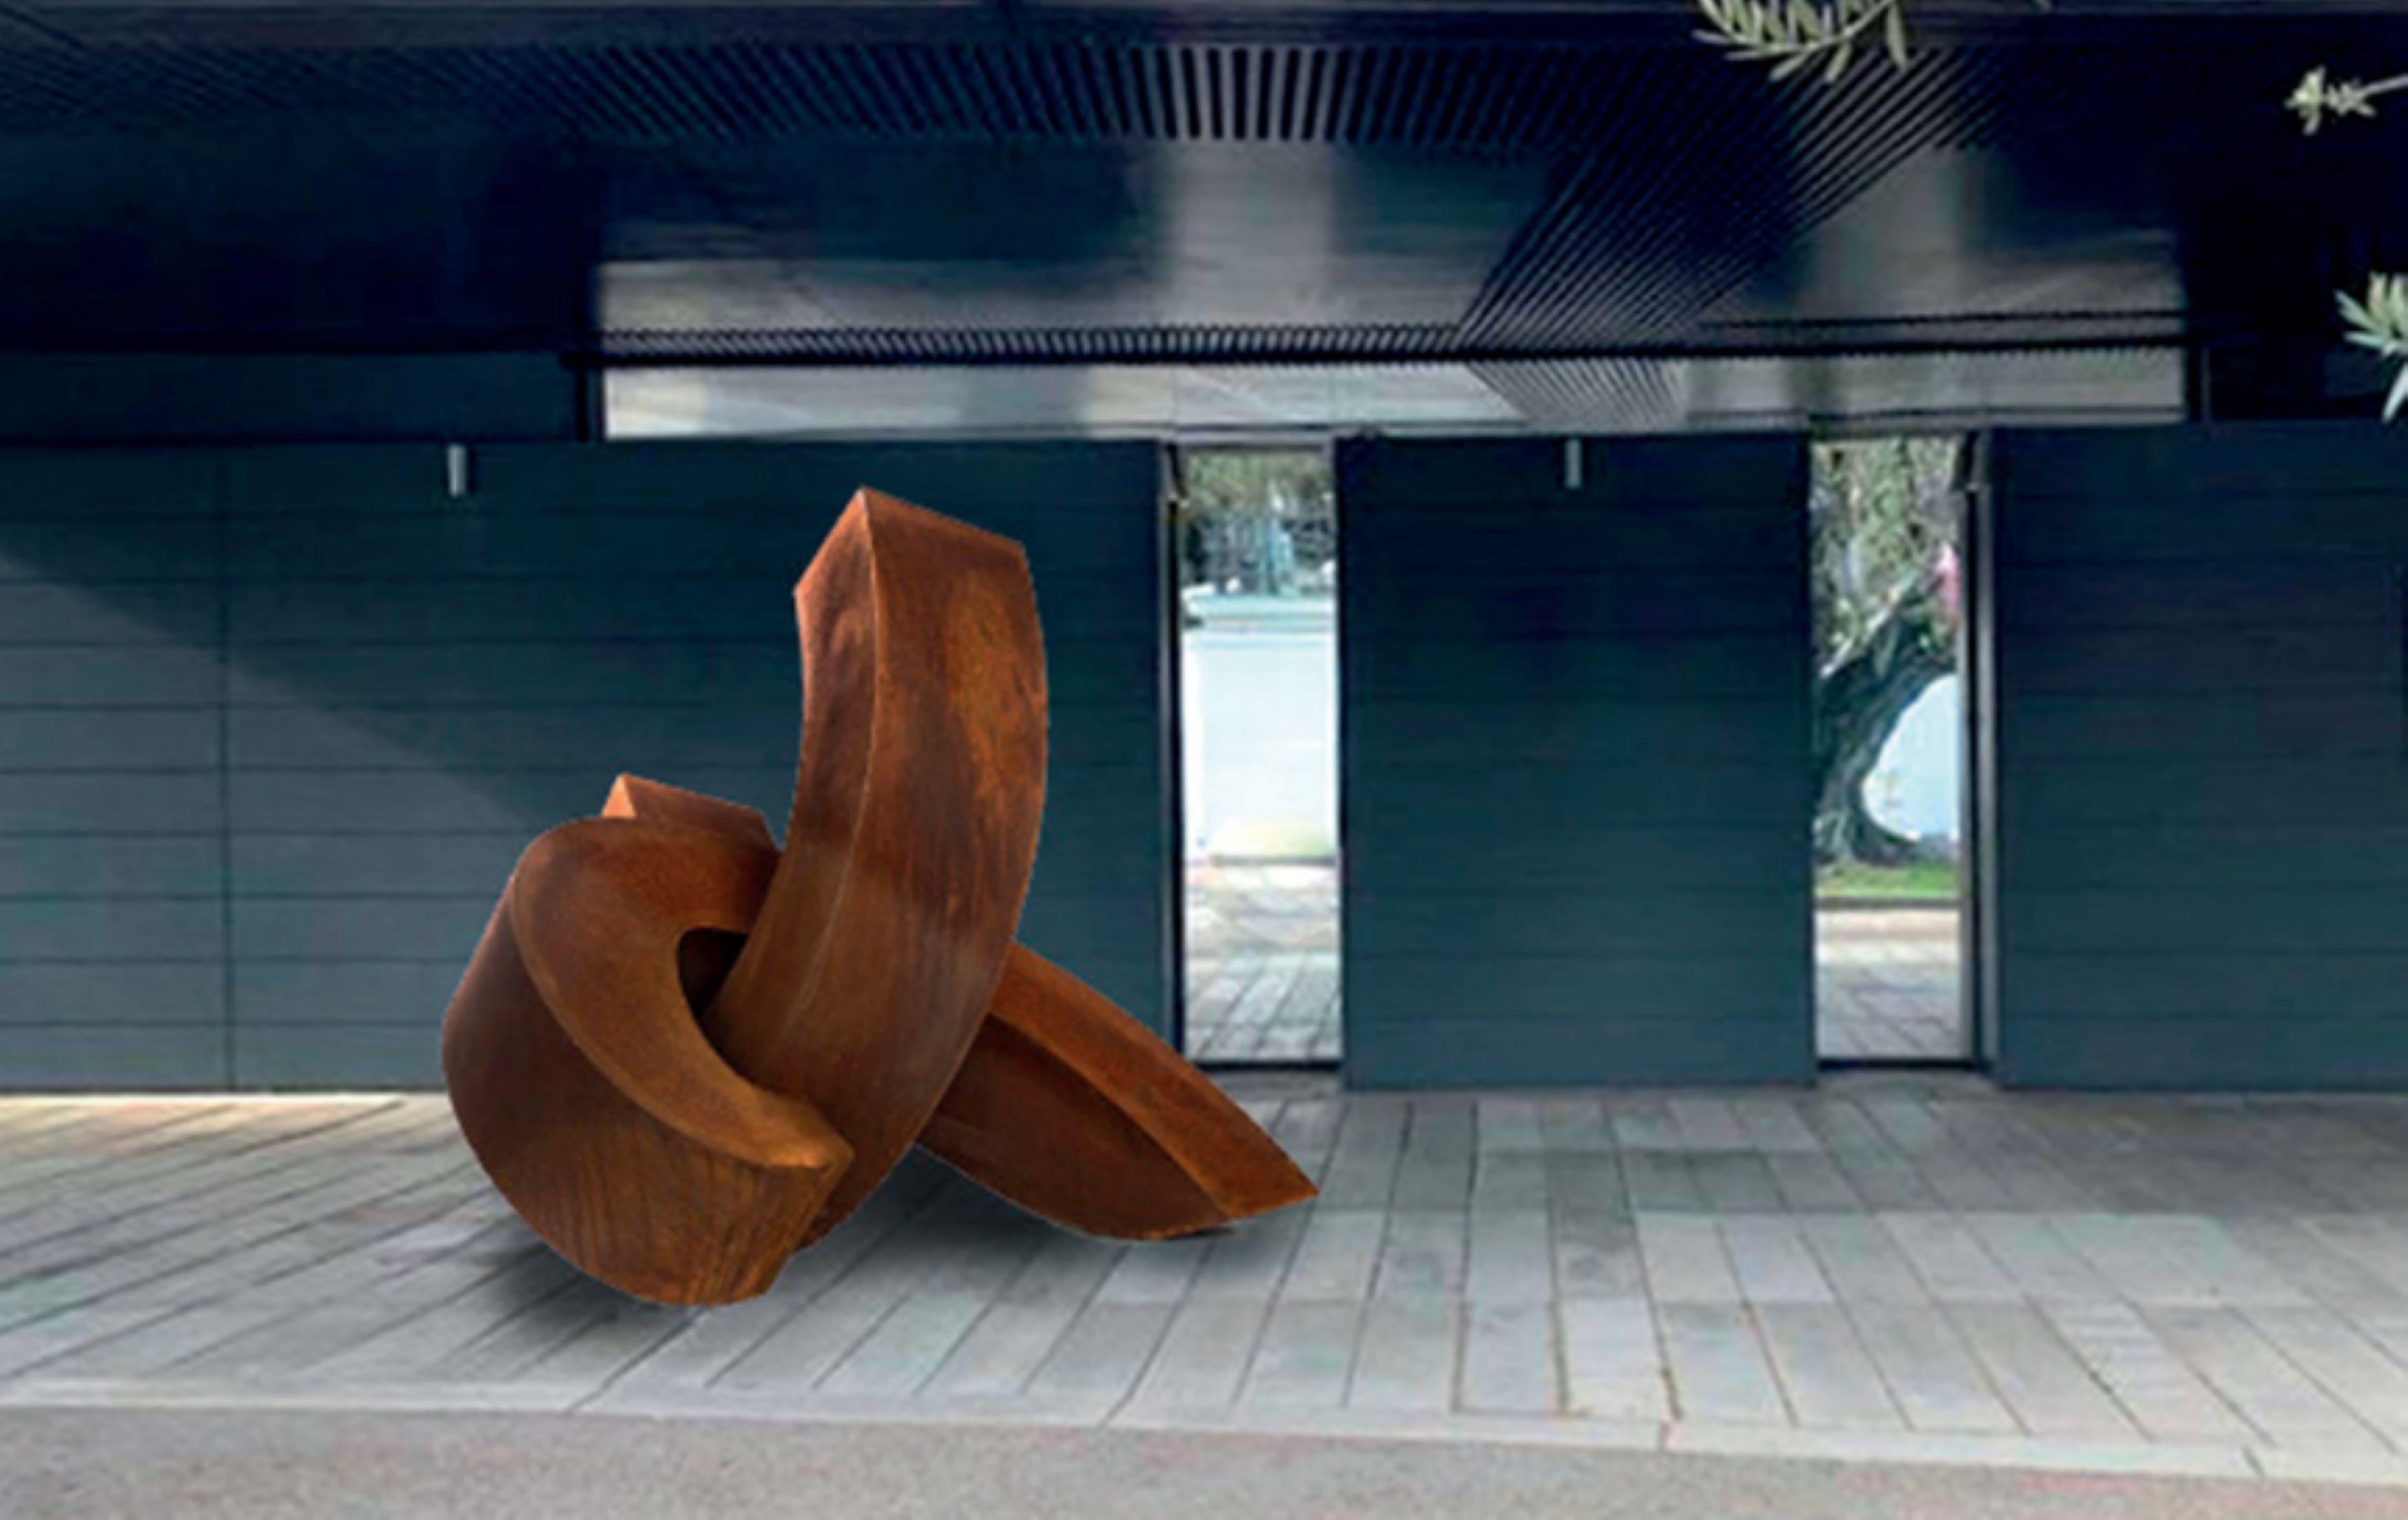 Sculpture d'Antoine Leclerq
Titre : STAY
Dimensions : 6',5'' x 6',5'' / 200 x 200 cm
Médias : Acier corten
Edition : 1/3

